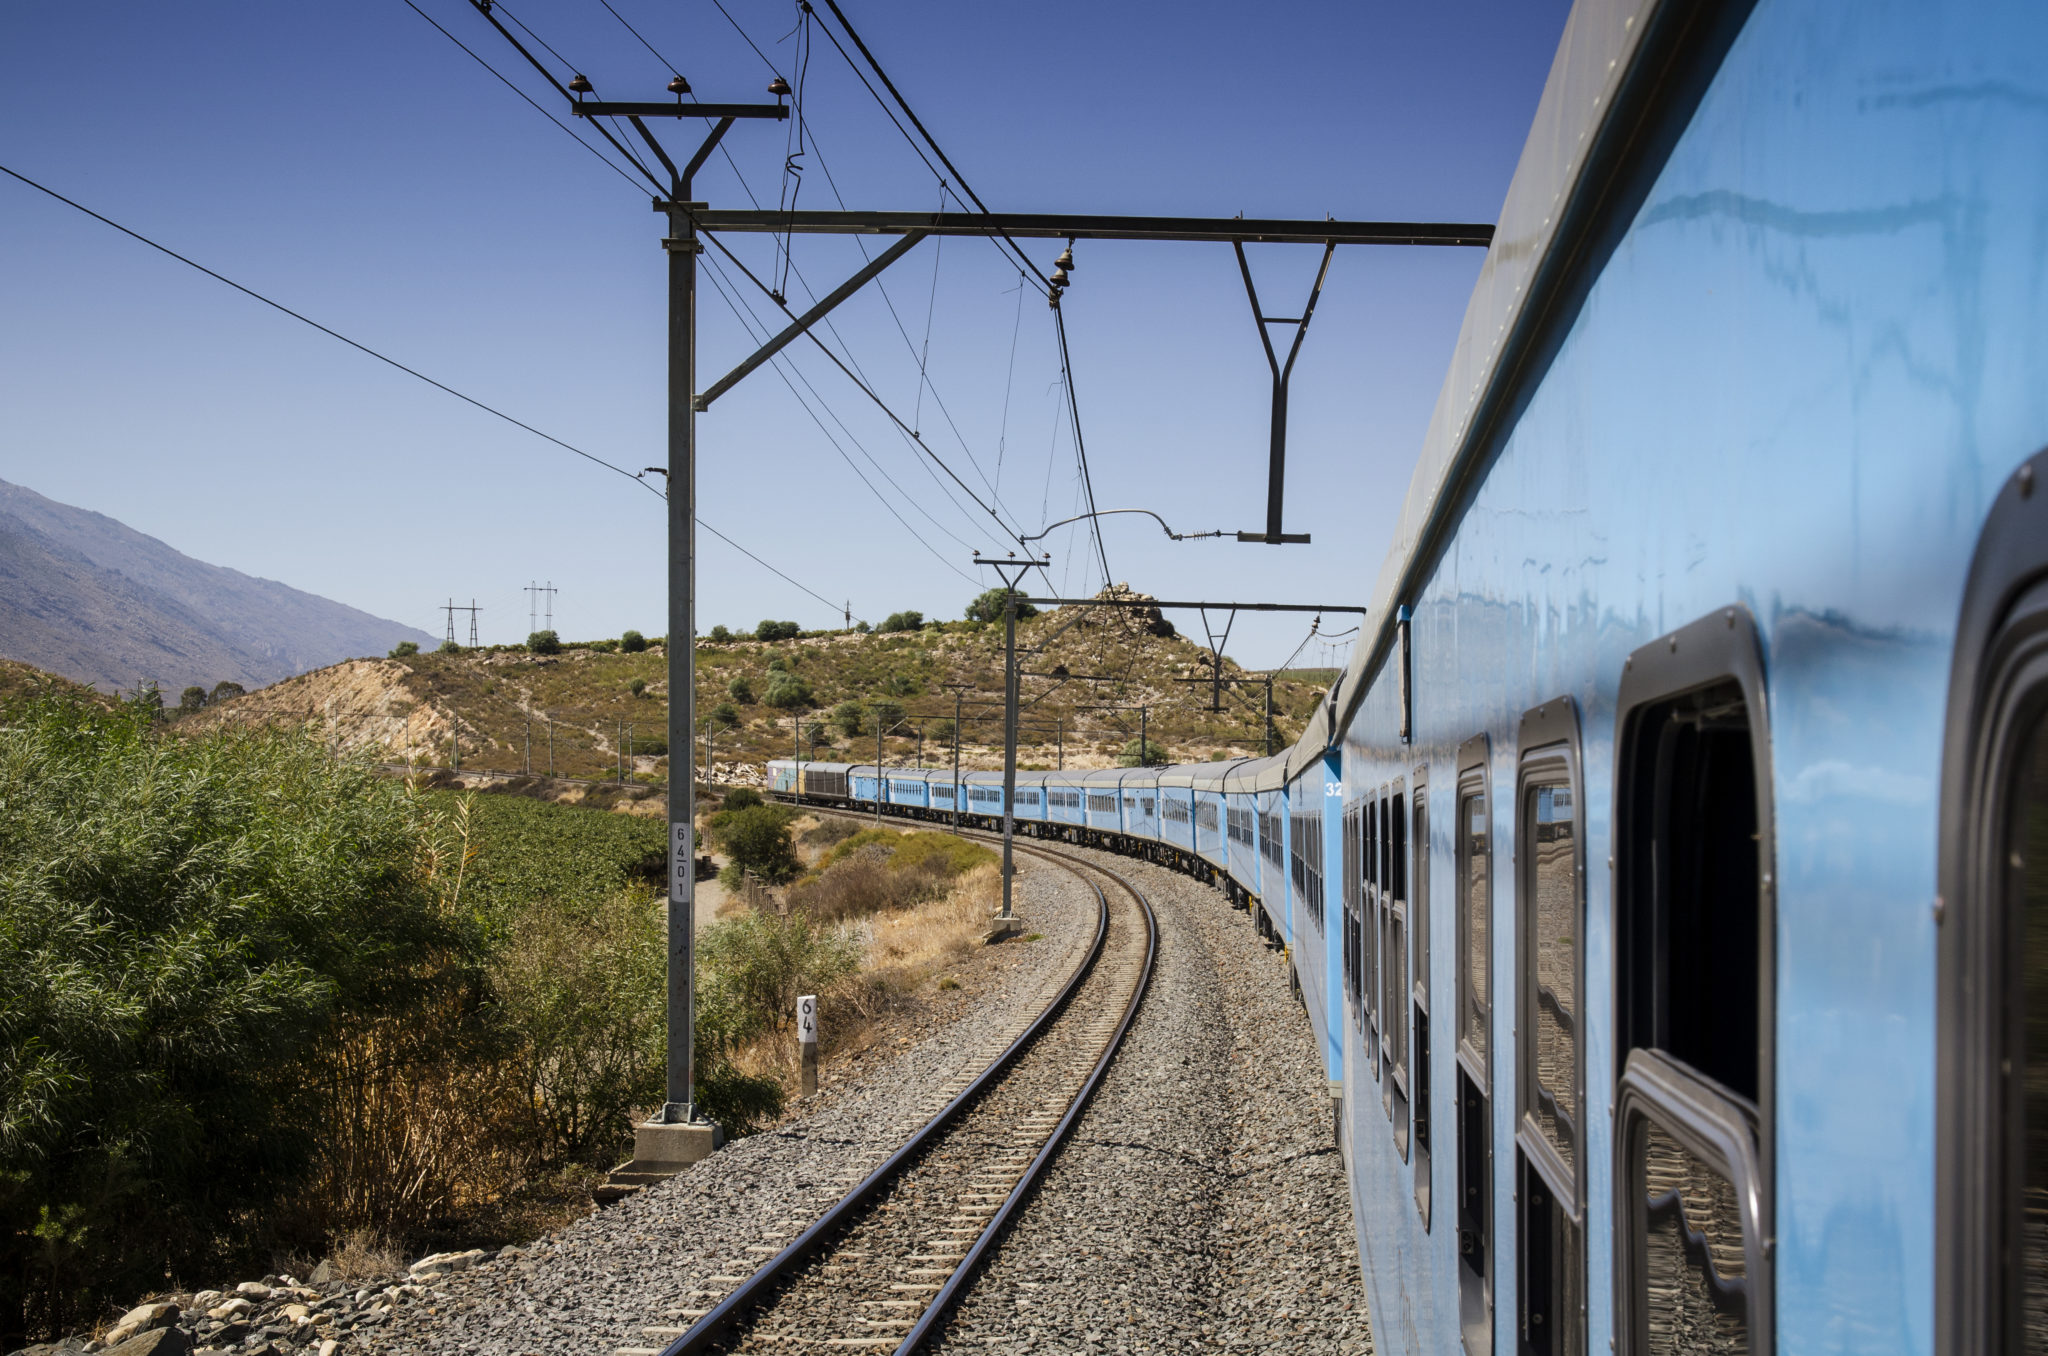 Im Blue Train von Johannesburg nach Kapstadt gilt als geheimer unter den Südafrika Reisetipps